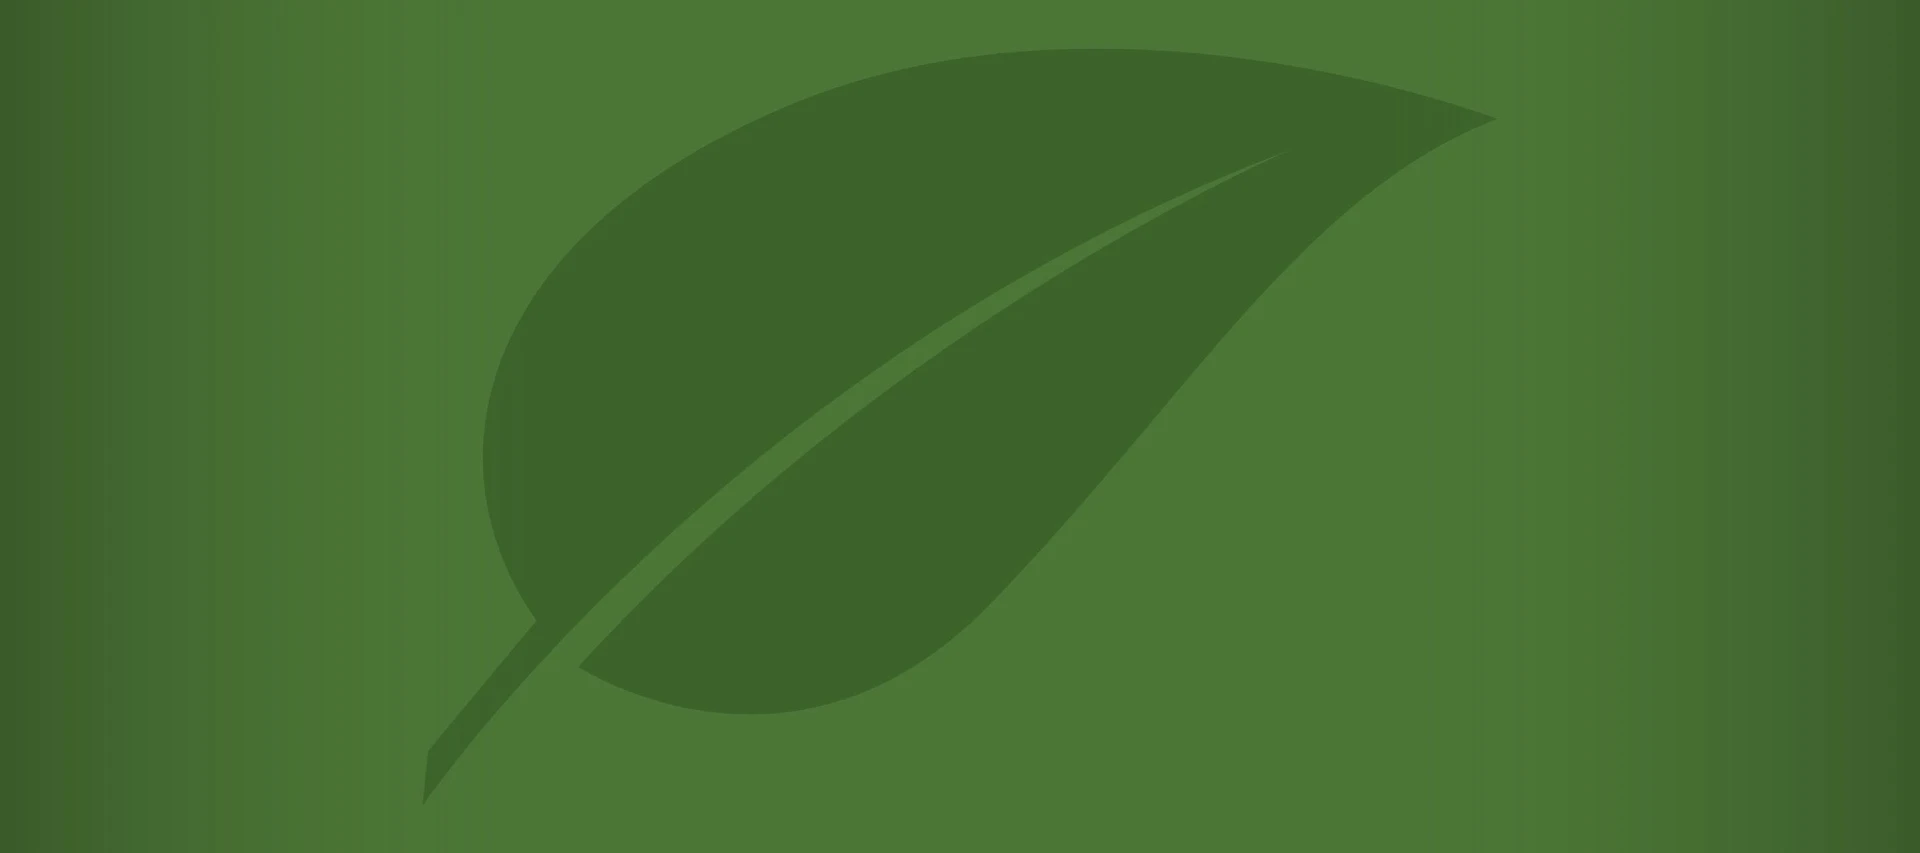 Green leaf illustration on green background.